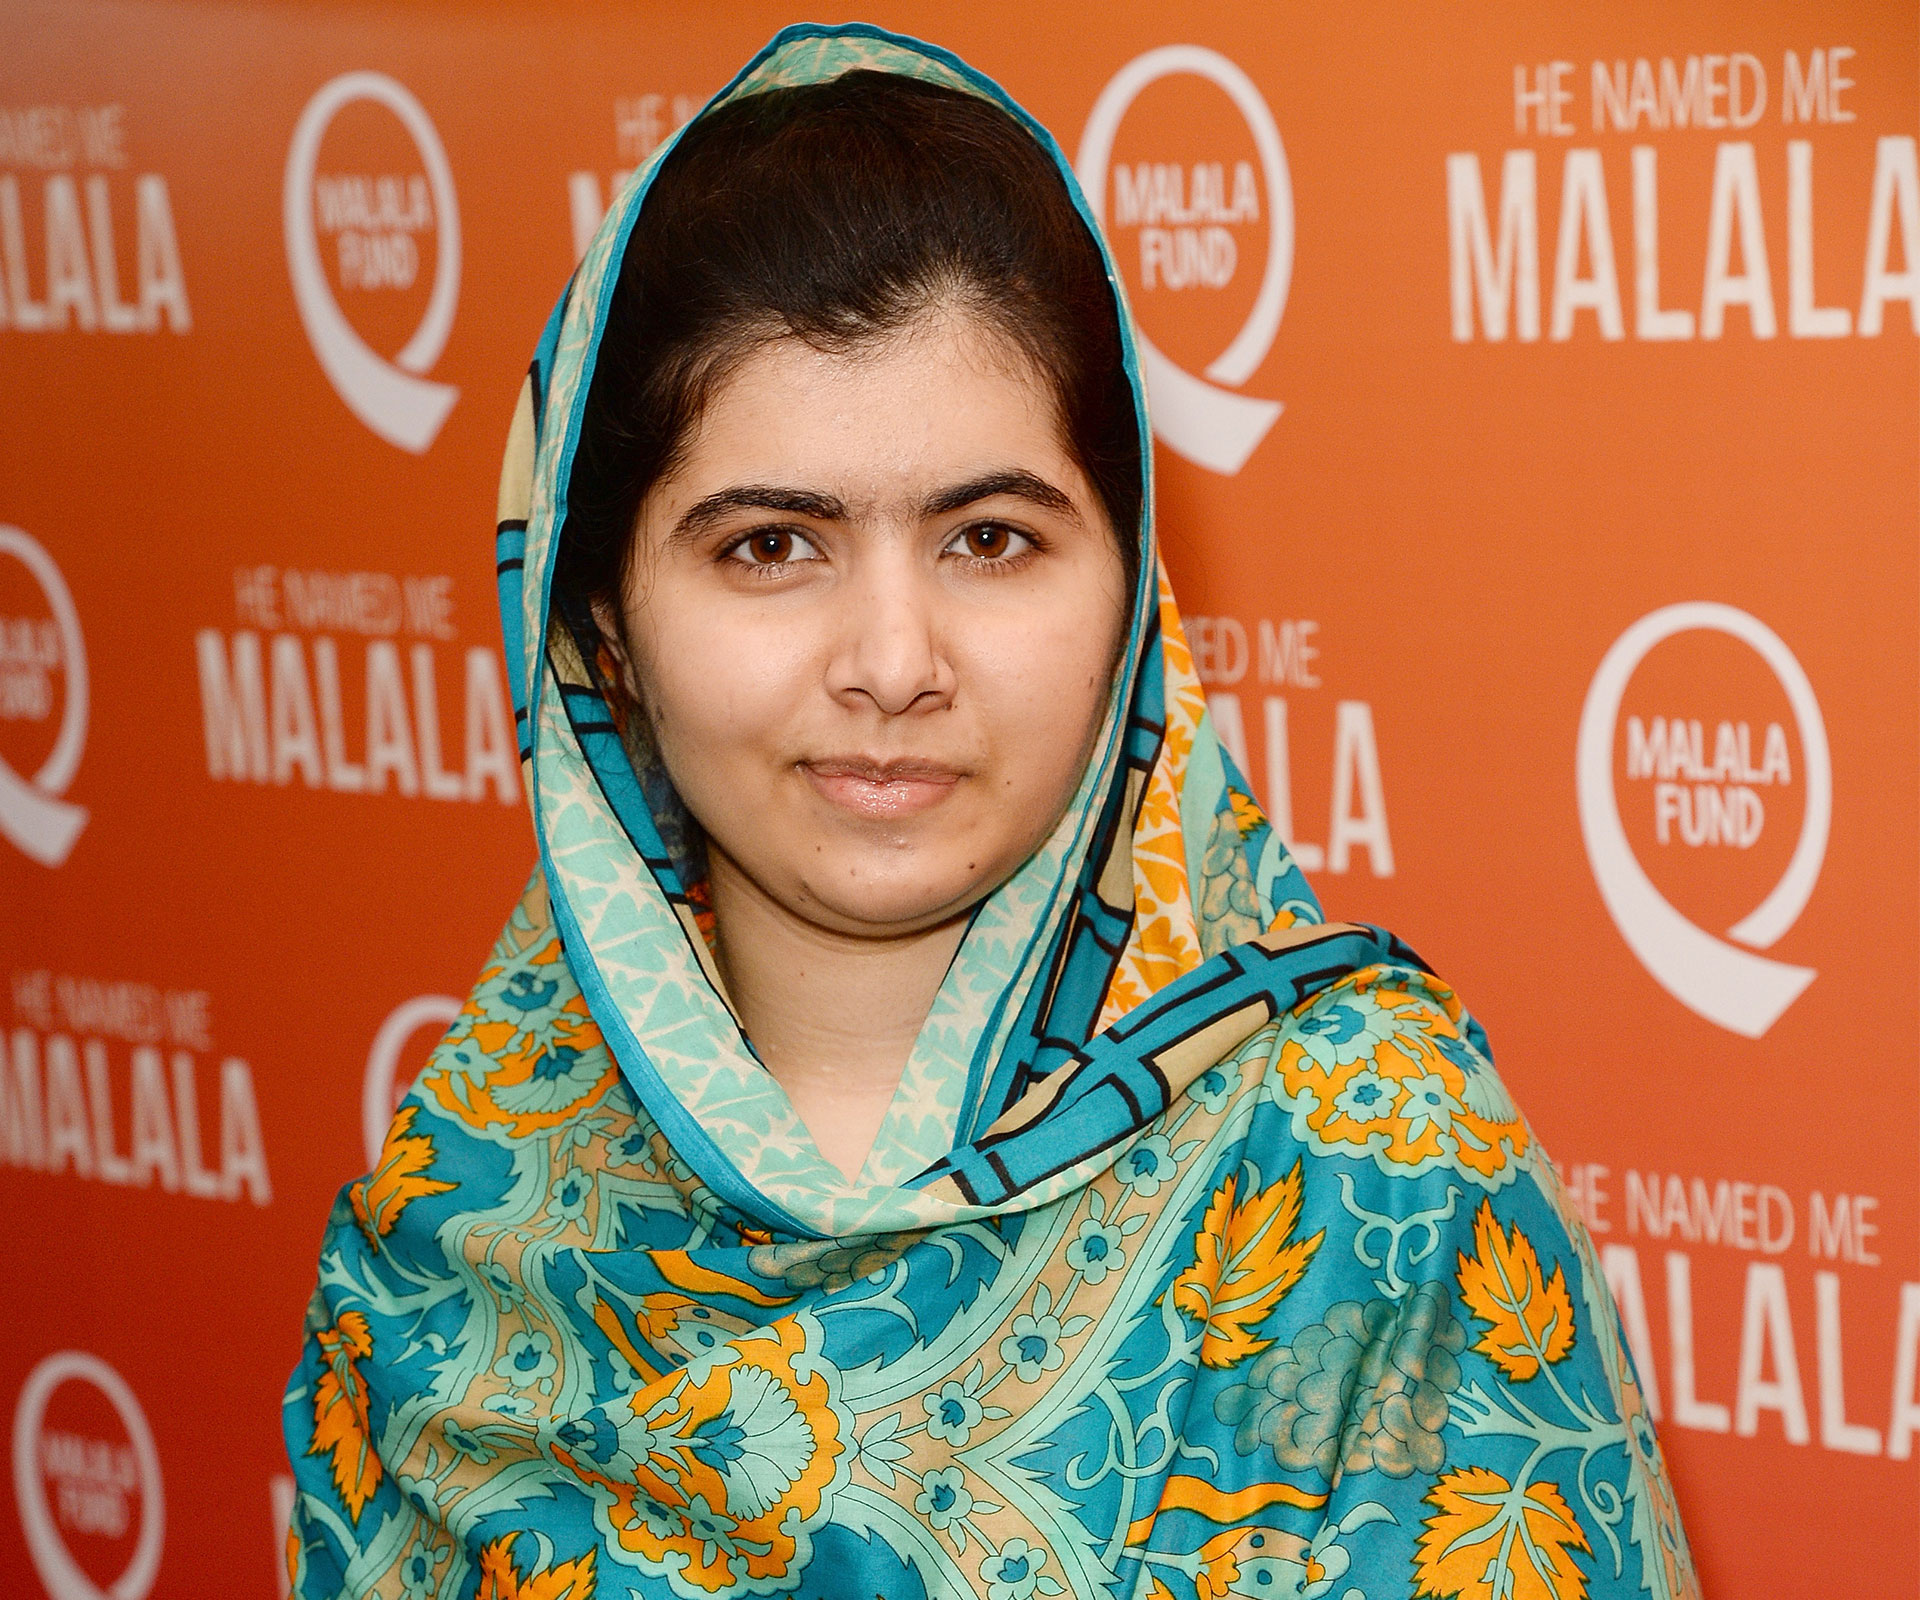 Malala Yousafzai talks inspiration with Emma Watson